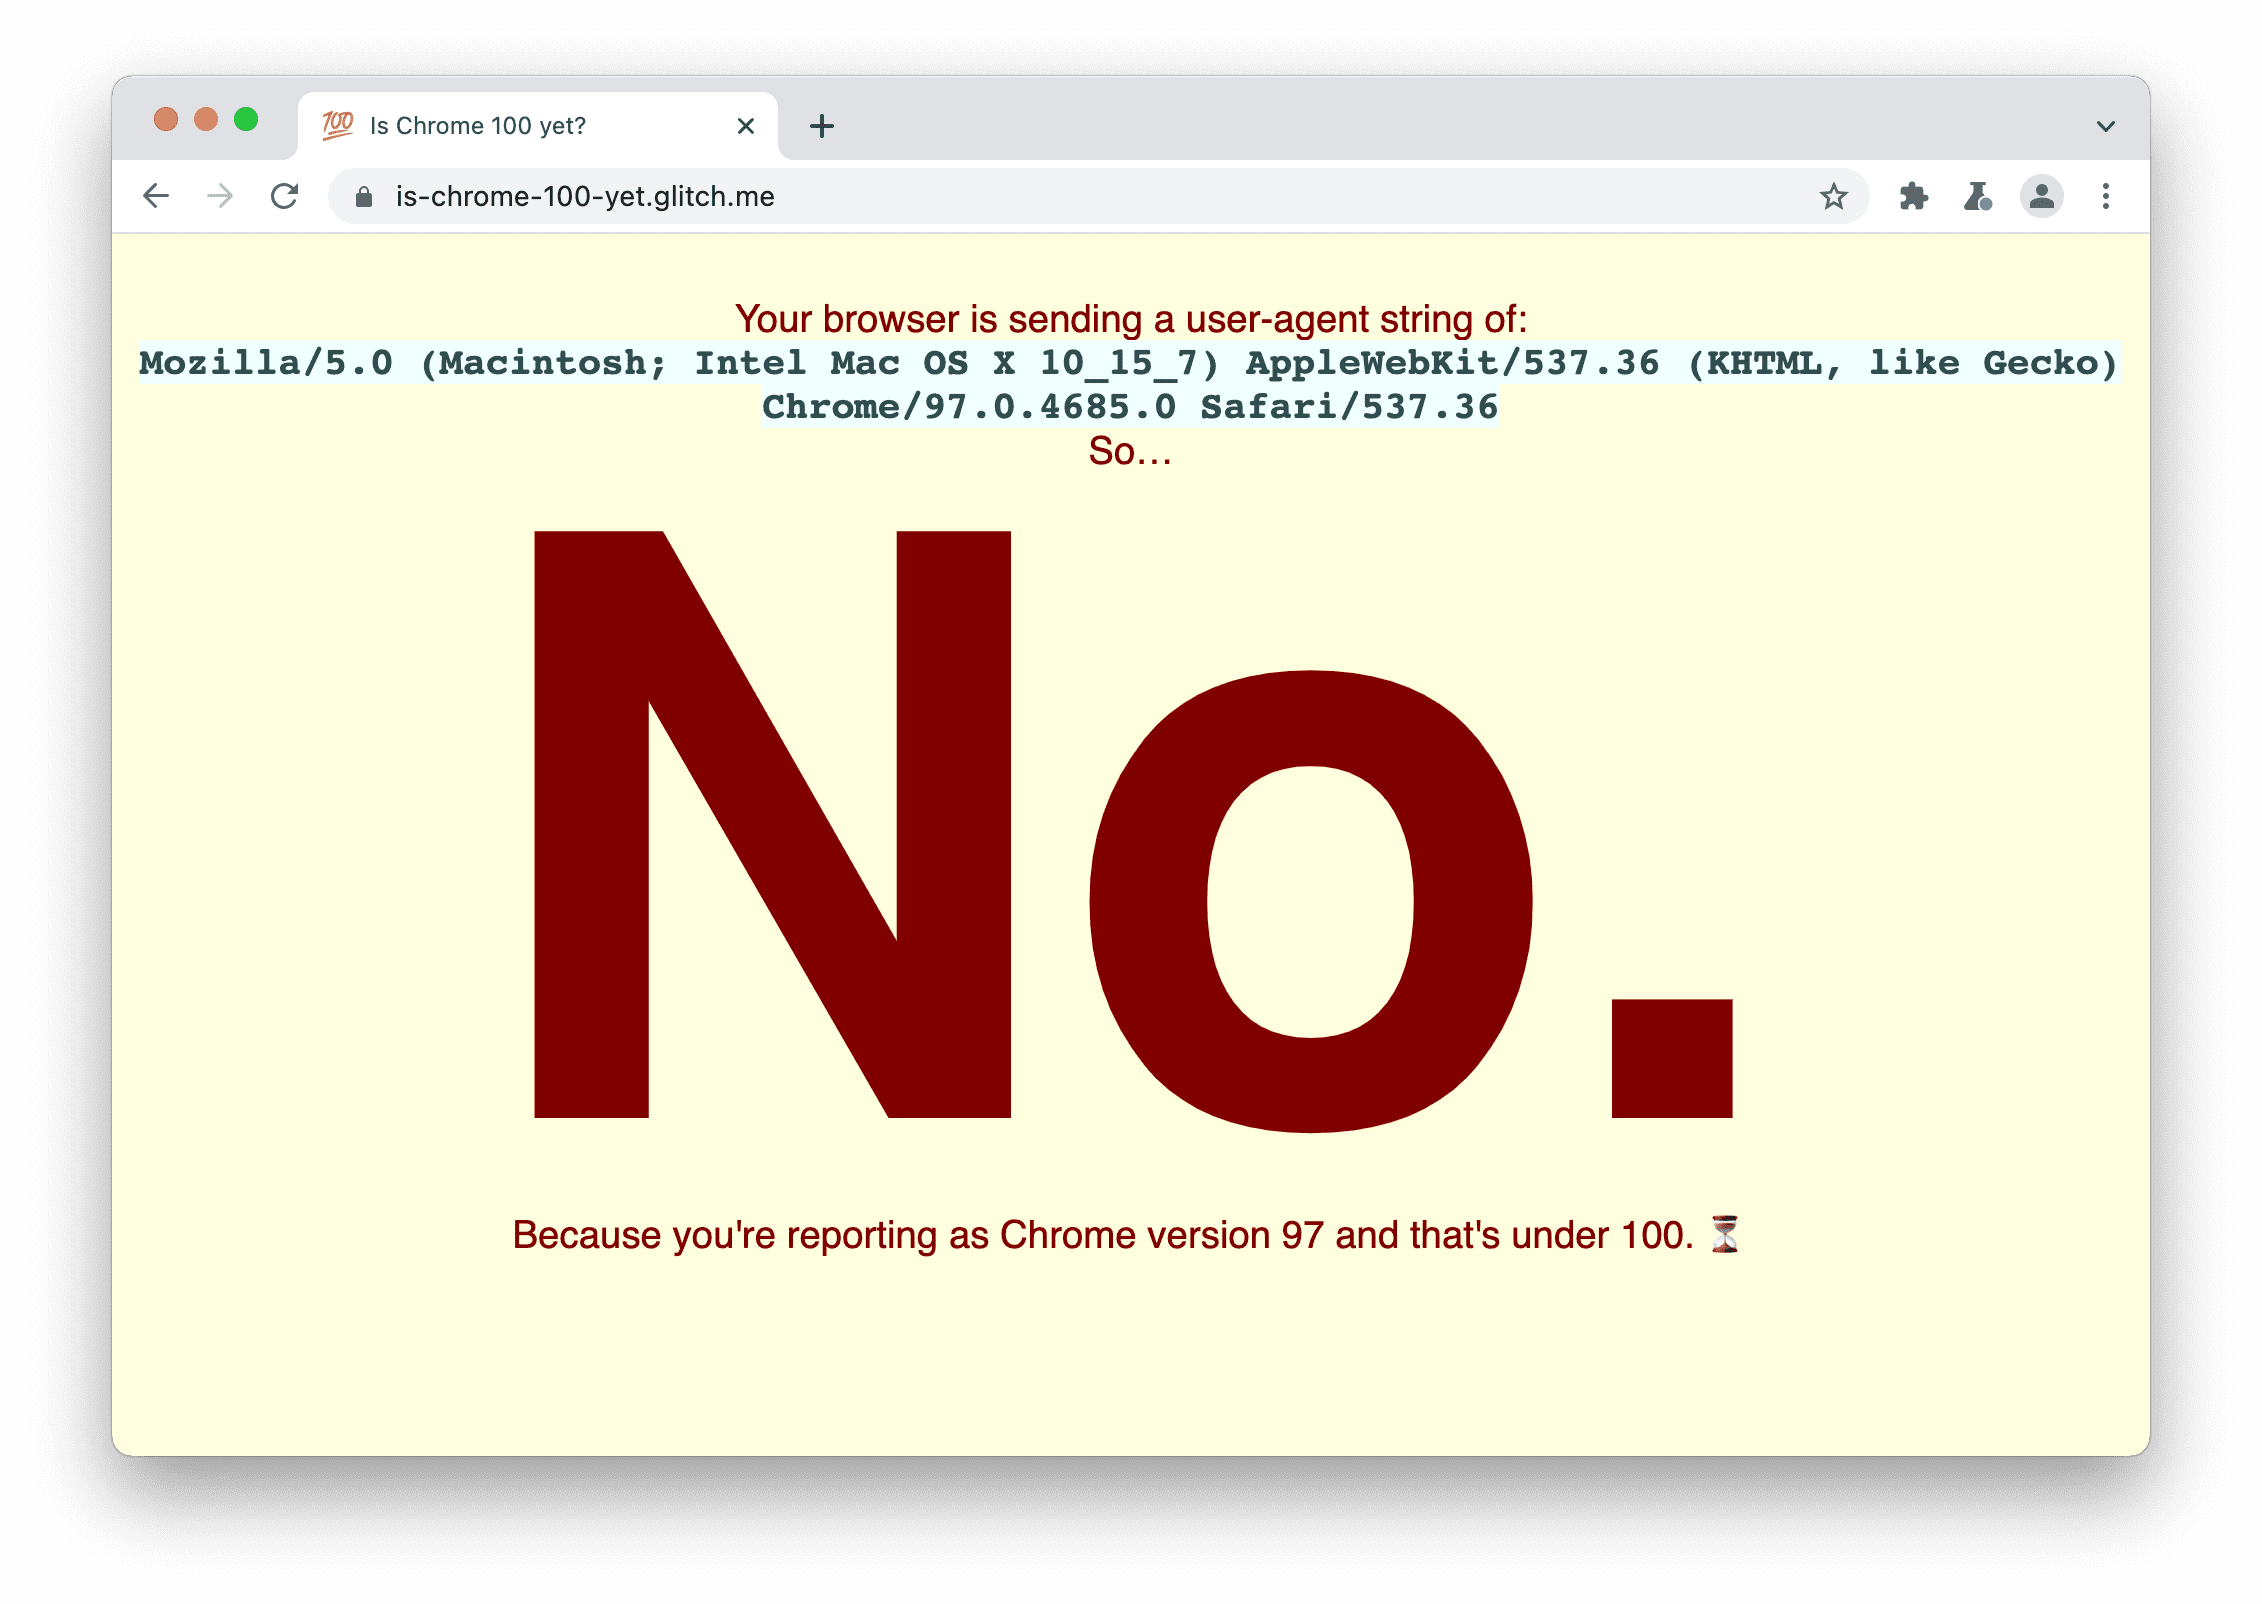 Un sitio que verifica si el navegador está enviando la cadena usuario-agente 100. Aparece: No, porque informaste que la versión de Chrome es 97 y es inferior a la 100.